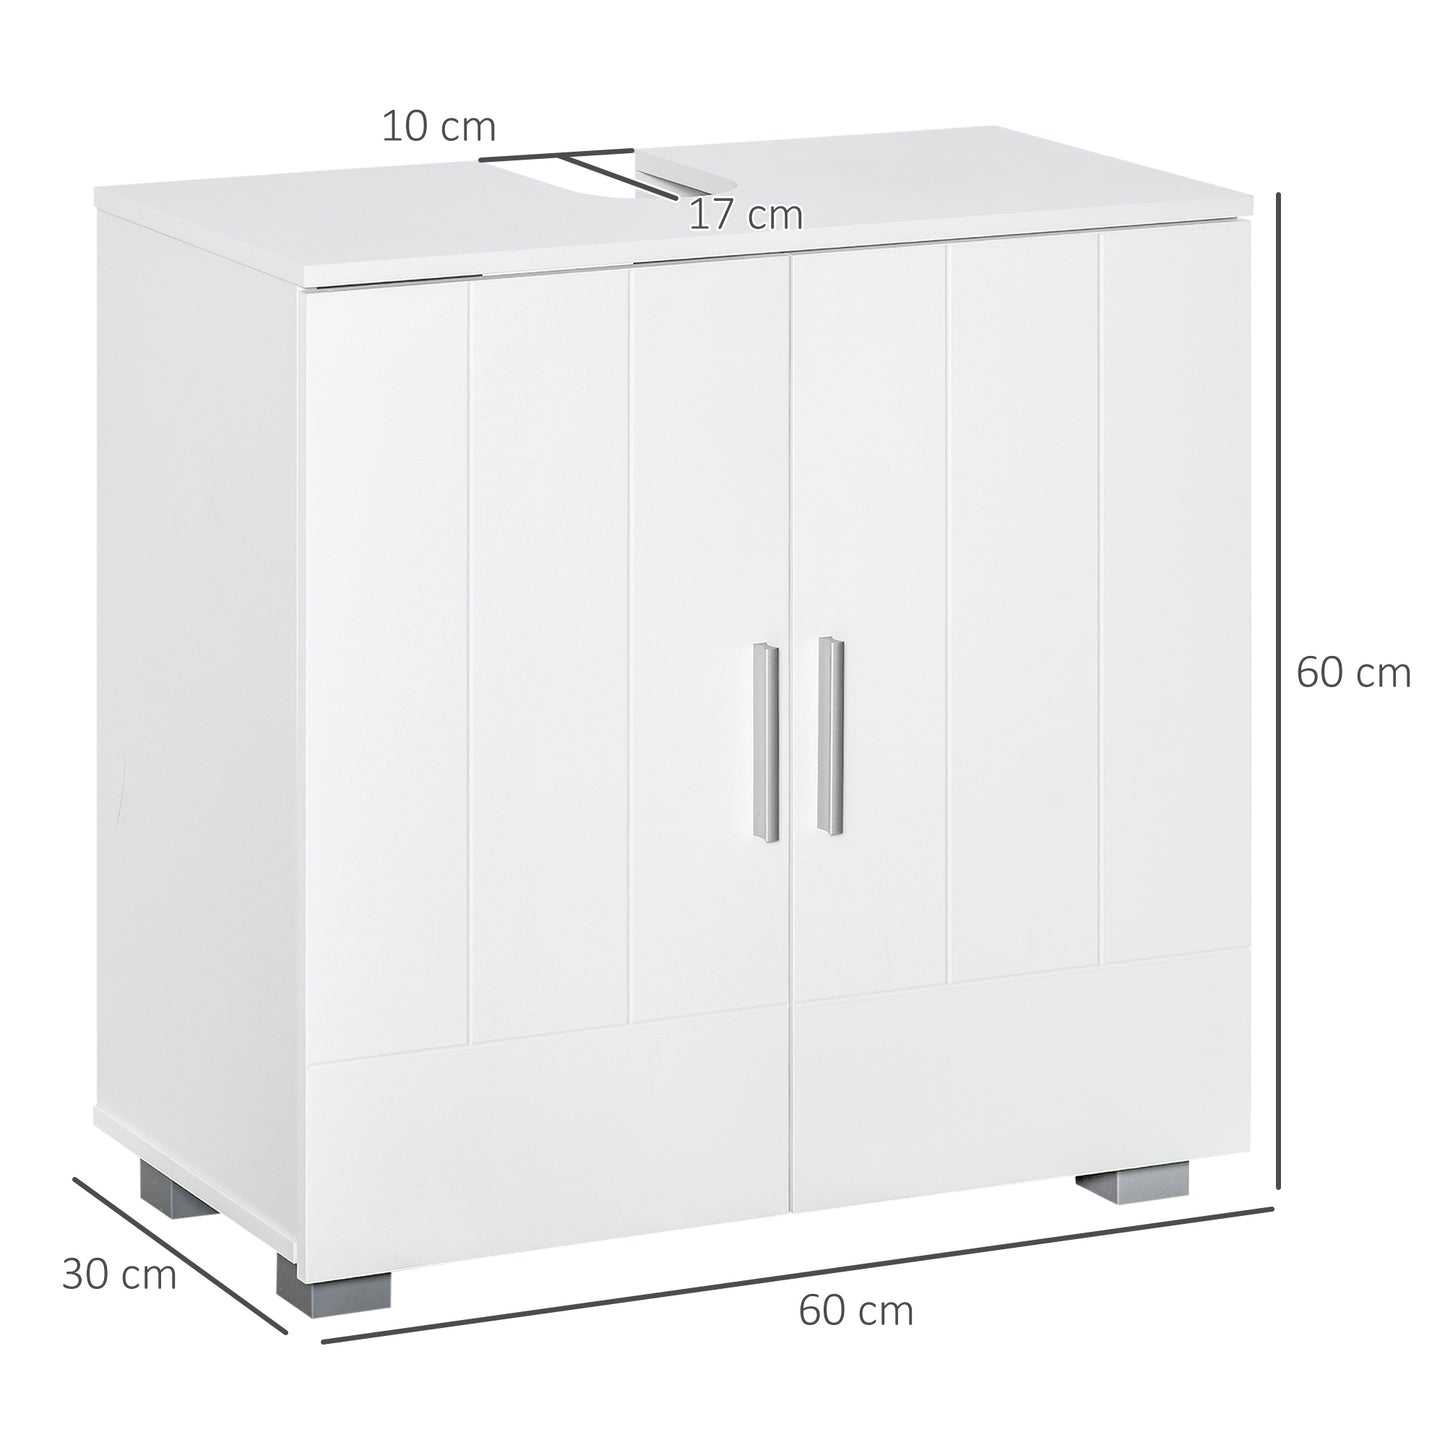 kleankin Mueble para Debajo del Lavabo Armario Baño de Suelo de Madera con 2 Puertas y Estante Ajustable Interior Moderno 60x30x60 cm Blanco